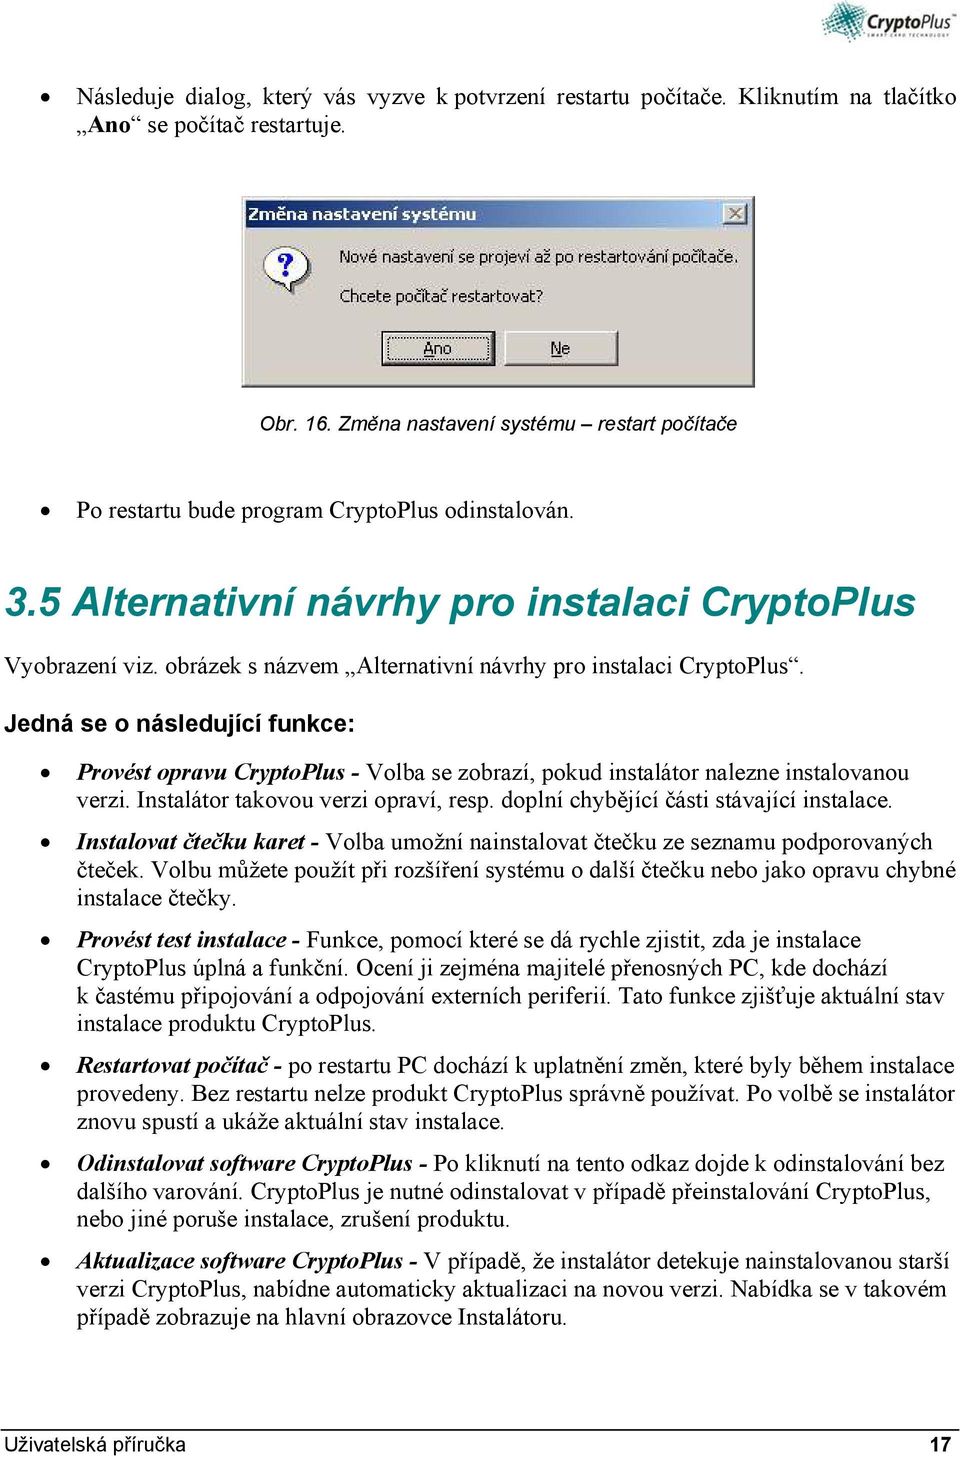 obrázek s názvem Alternativní návrhy pro instalaci CryptoPlus. Jedná se o následující funkce: Provést opravu CryptoPlus - Volba se zobrazí, pokud instalátor nalezne instalovanou verzi.